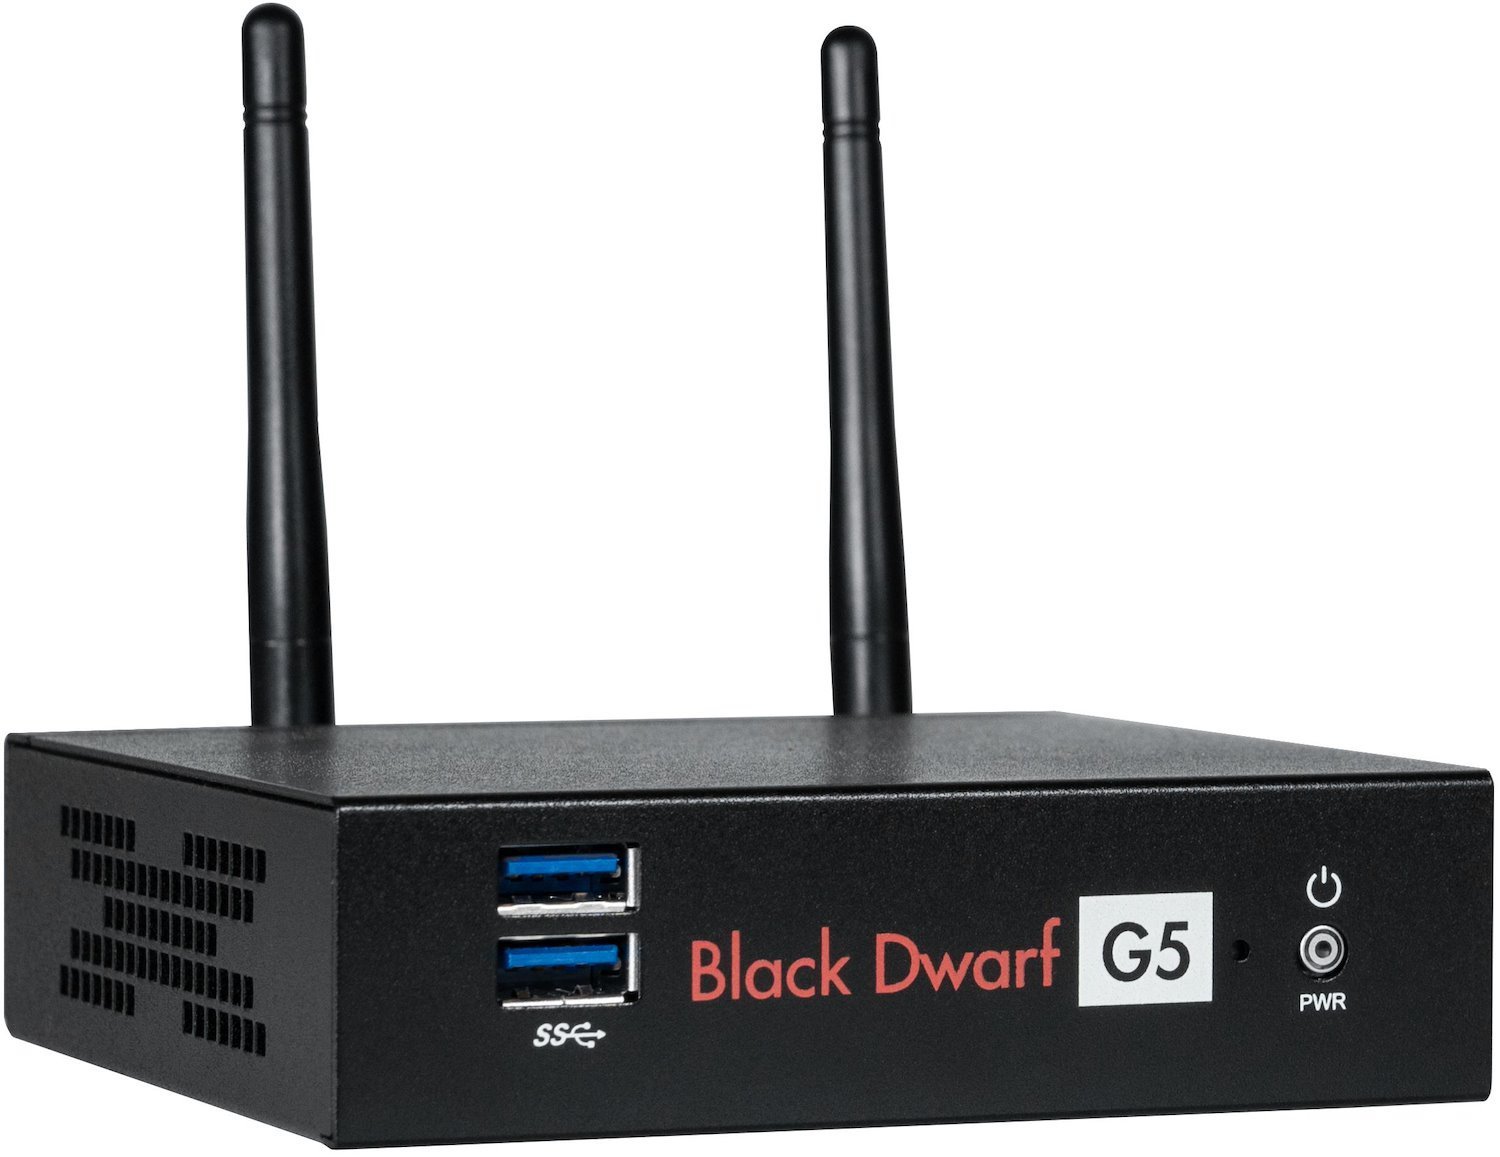 Securepoint Black Dwarf VPN As A Service Hardware Firewall Desktop 1850 Mbit/S (Terra Firewall Black Dwarf G5 As A Service Inkl. Securepoint Infinity-Lizenz VPN Monatlich / Preis Pro Monat)